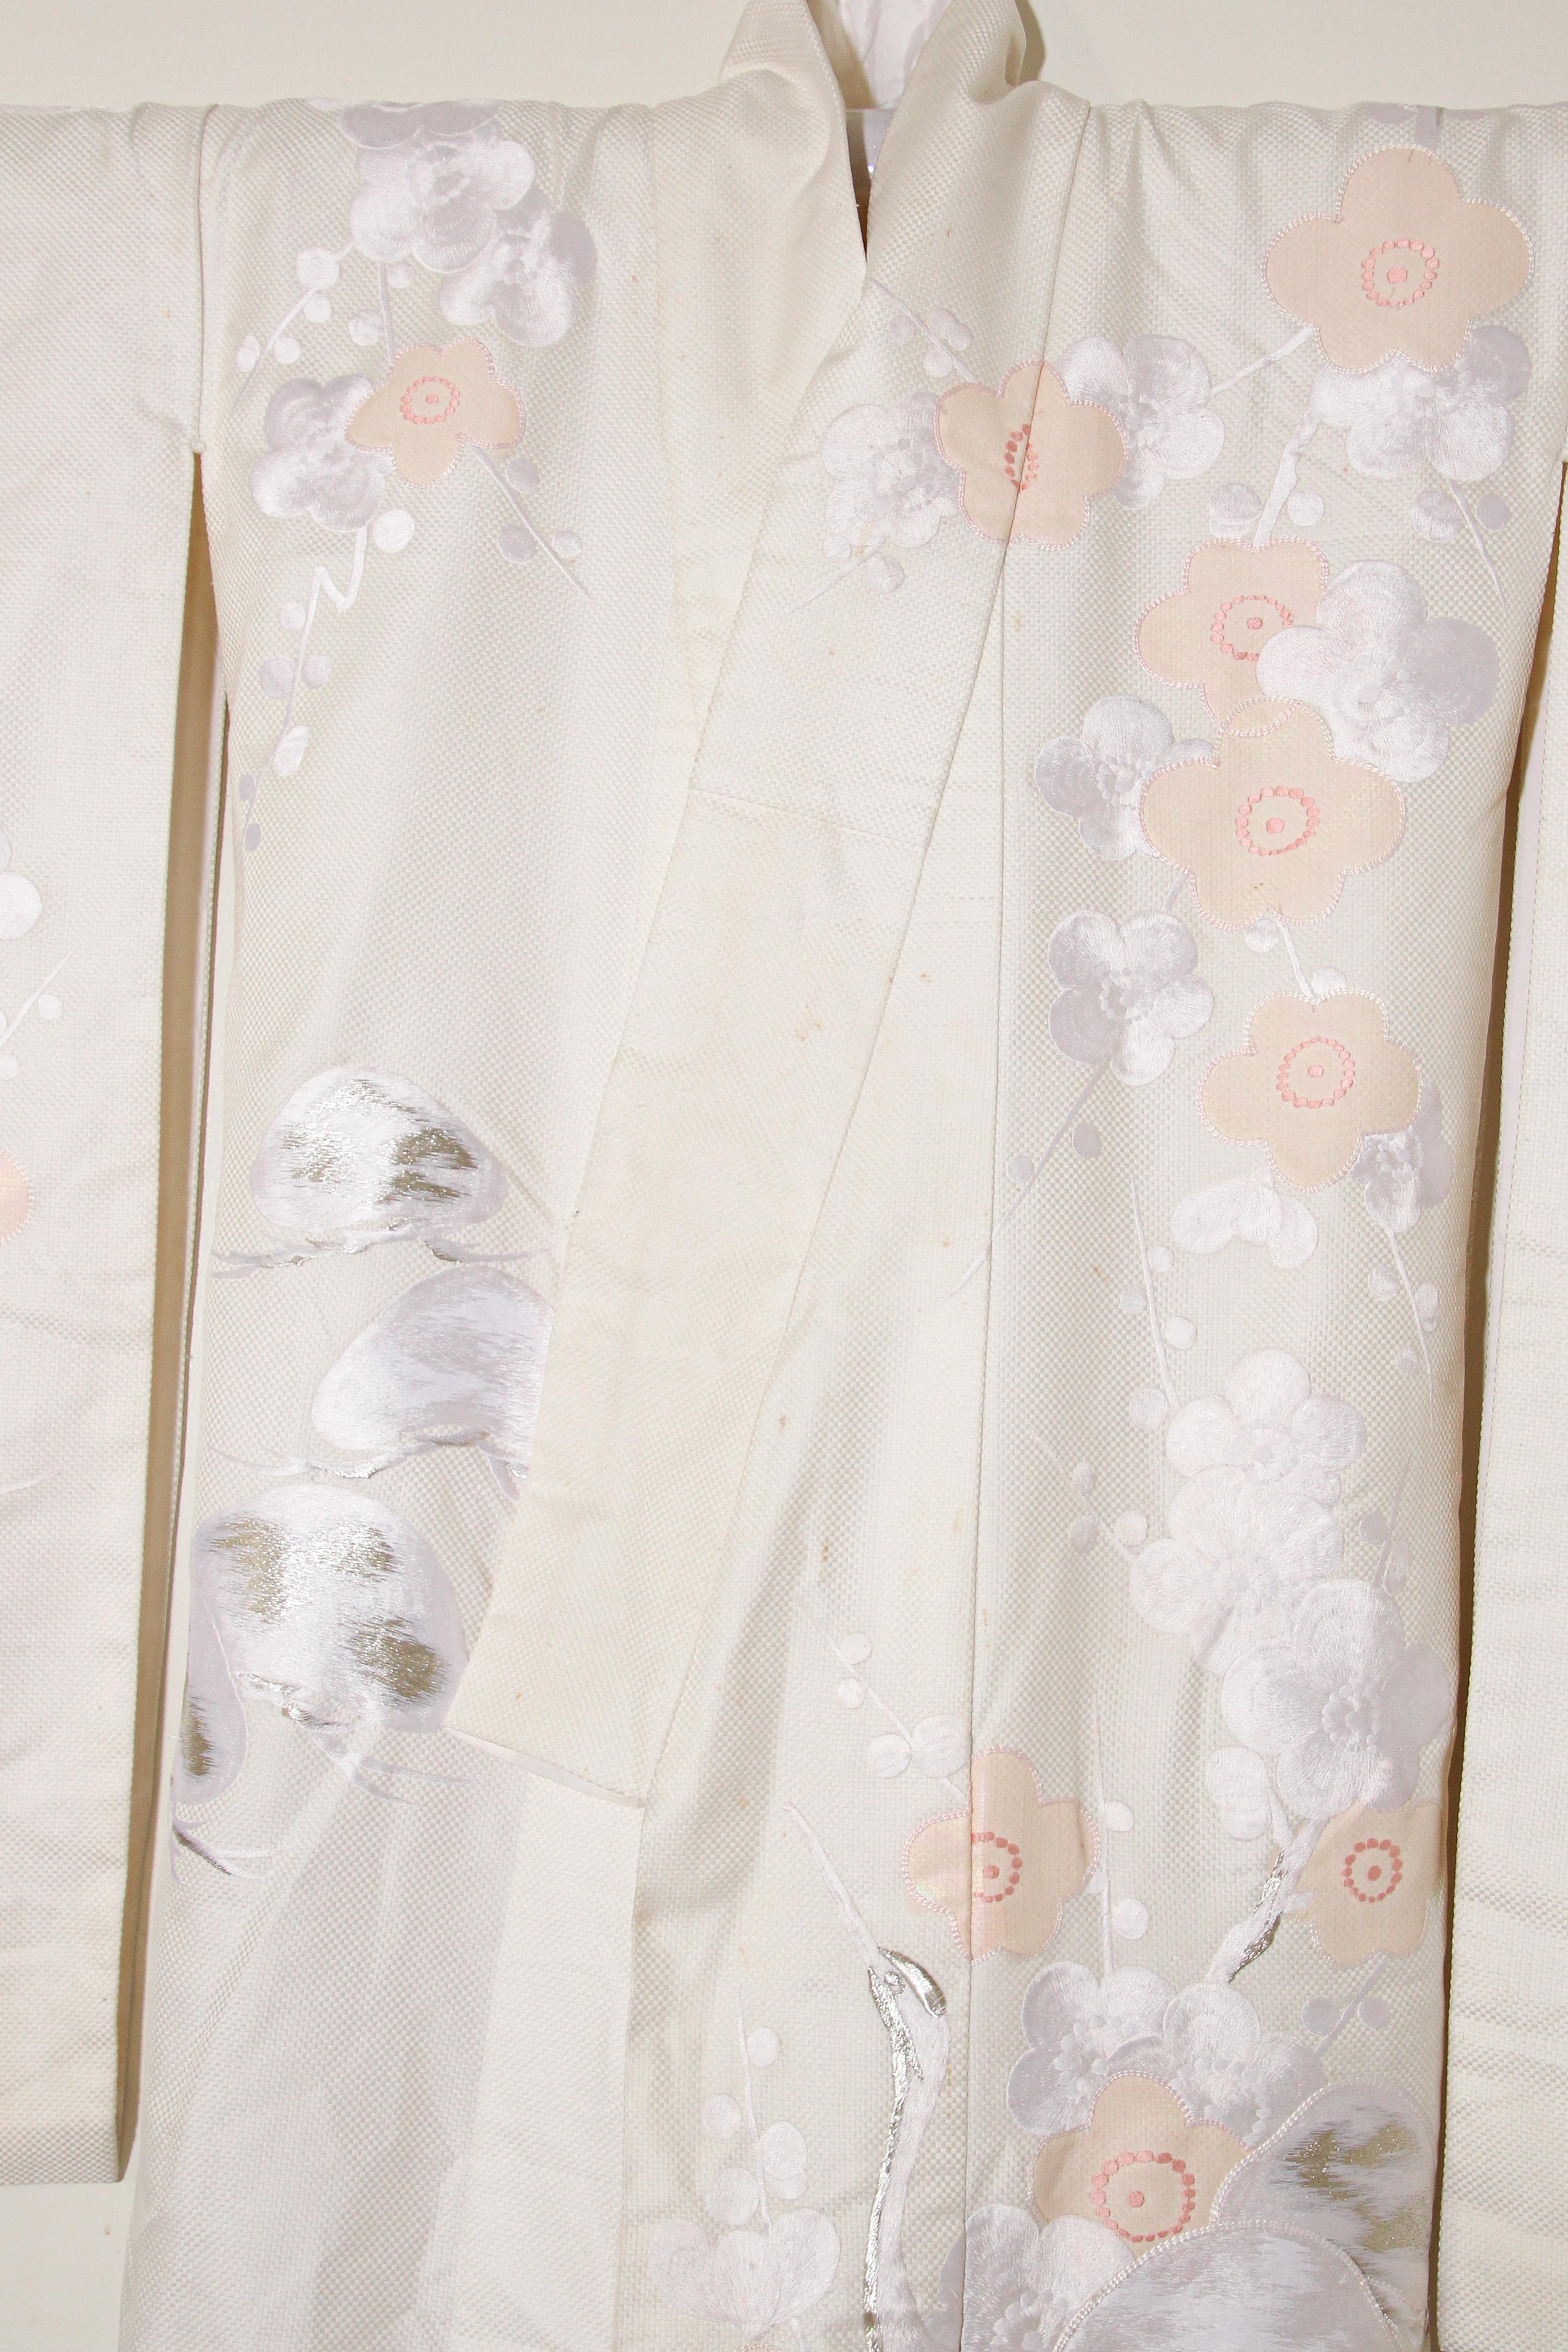 Vintage Collectable Japanese White Silk Ceremonial Wedding Kimono 4